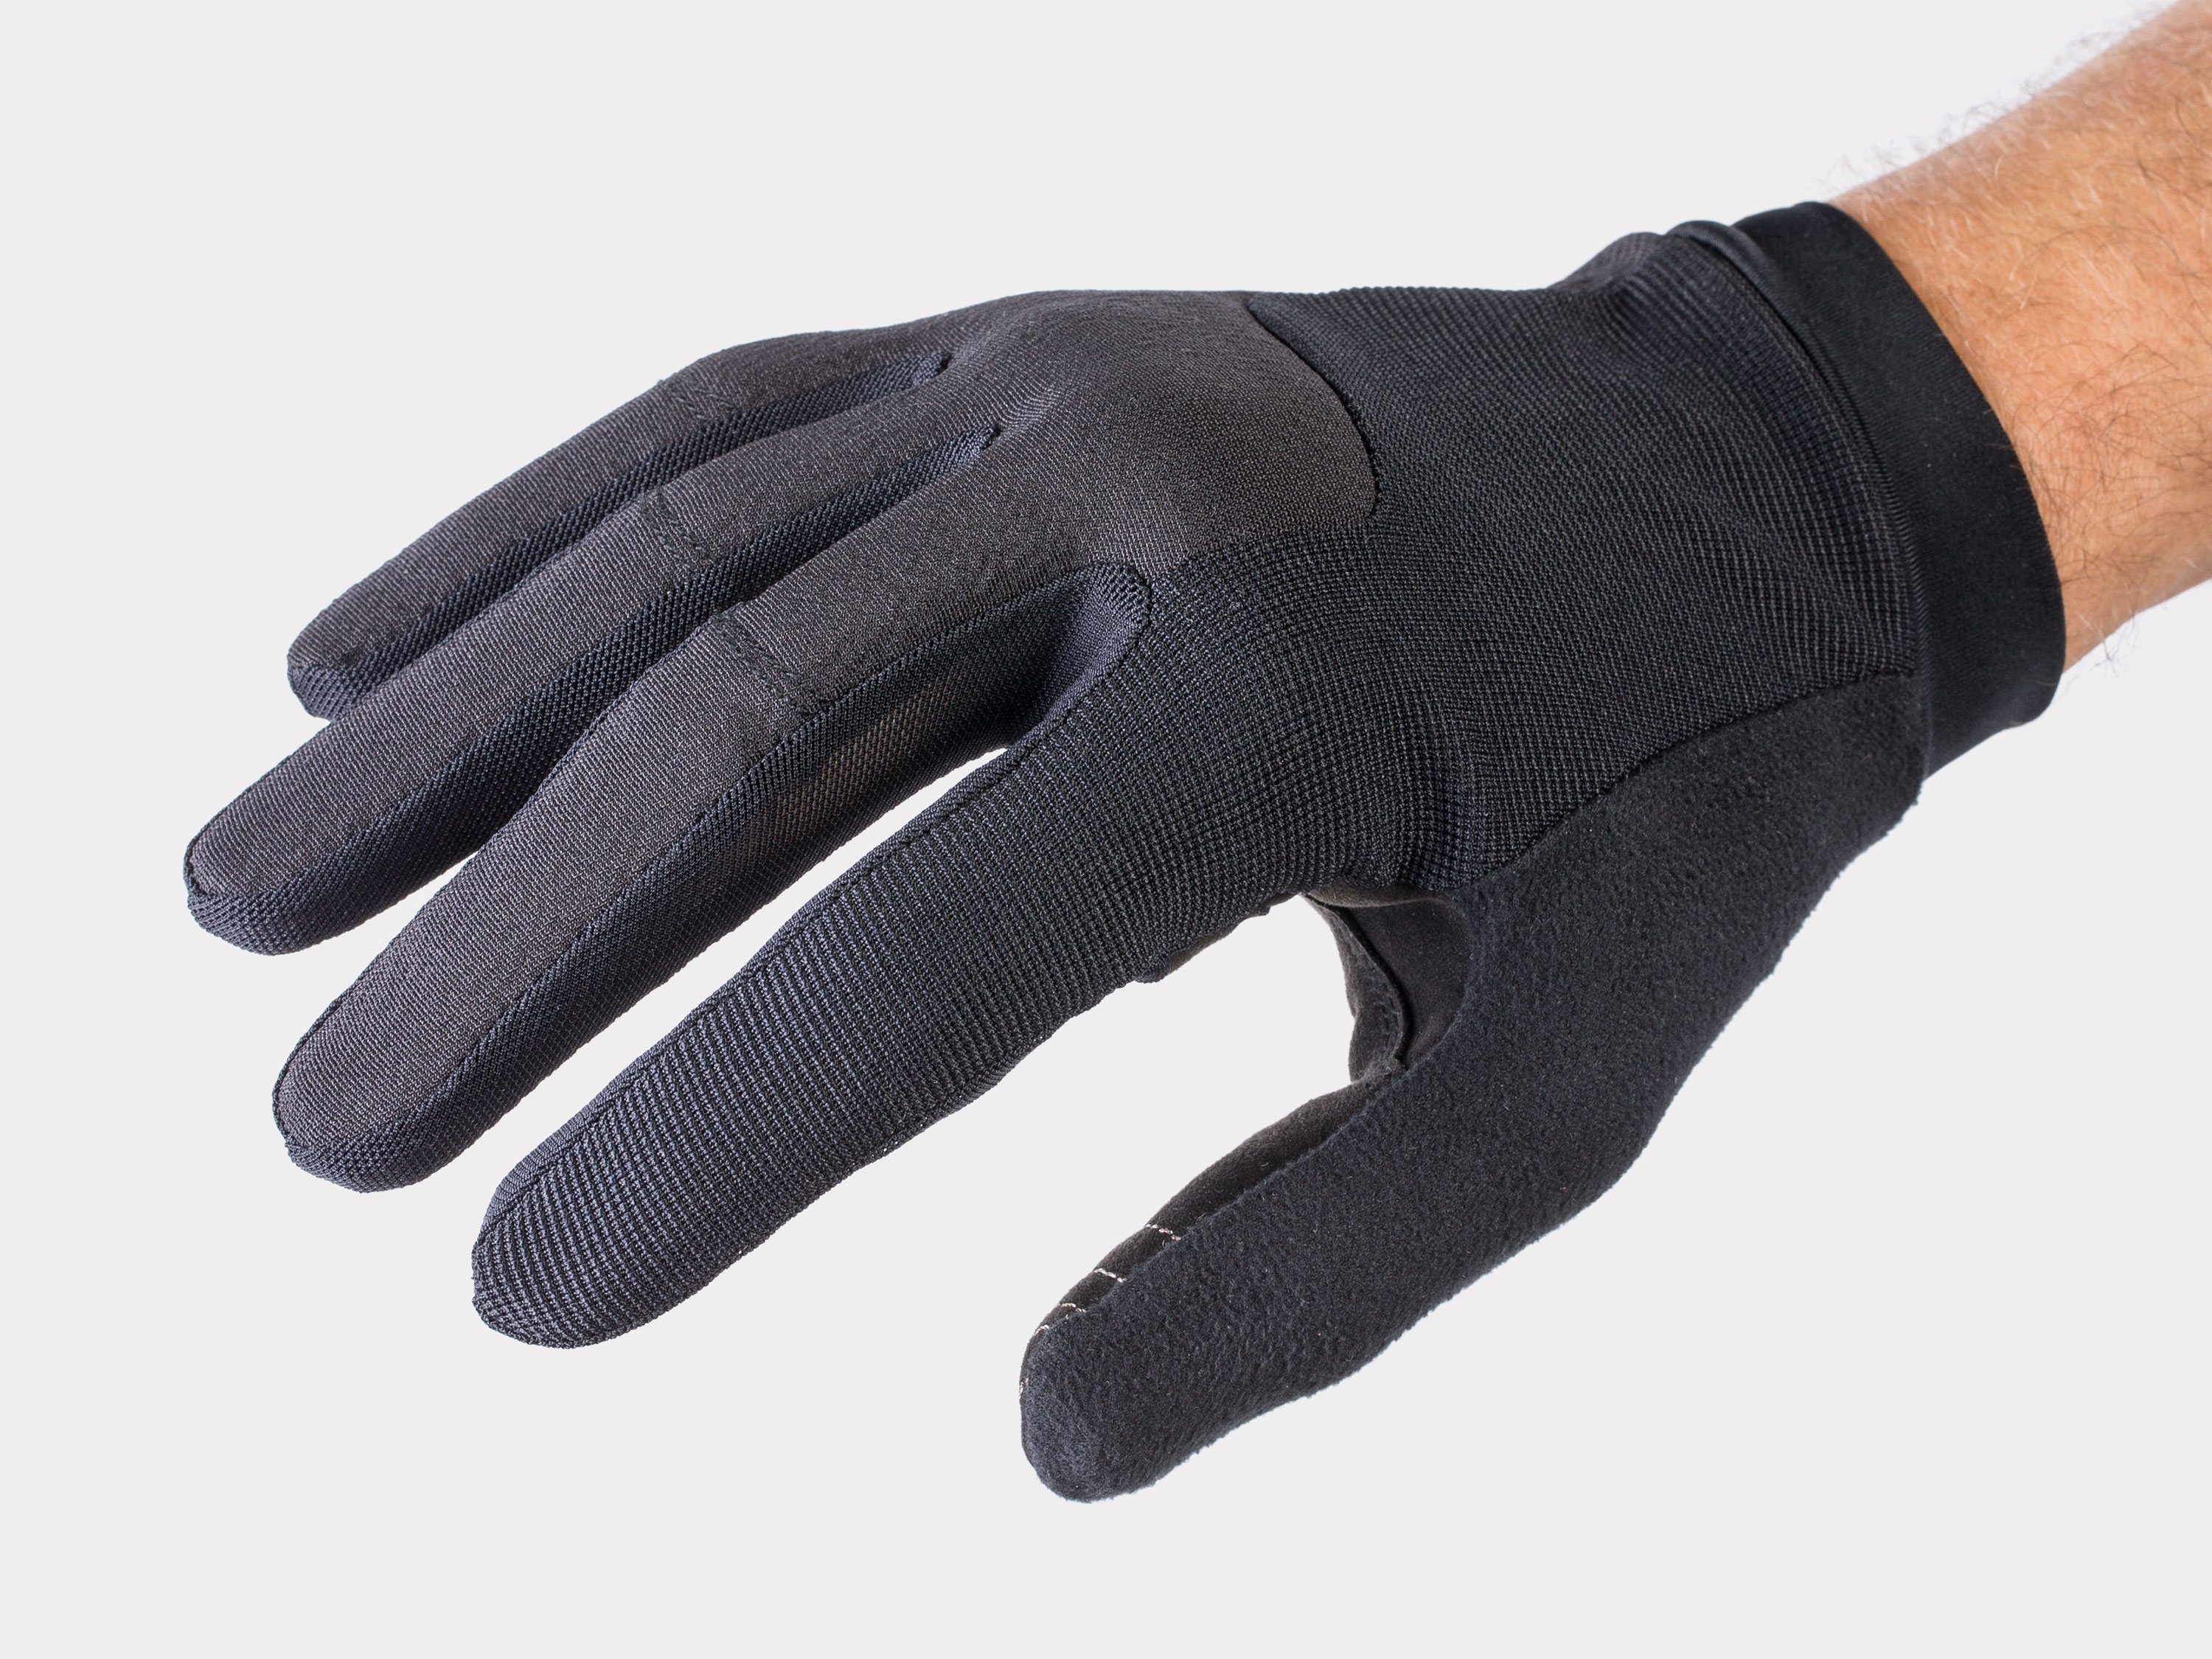 mens mountain bike gloves